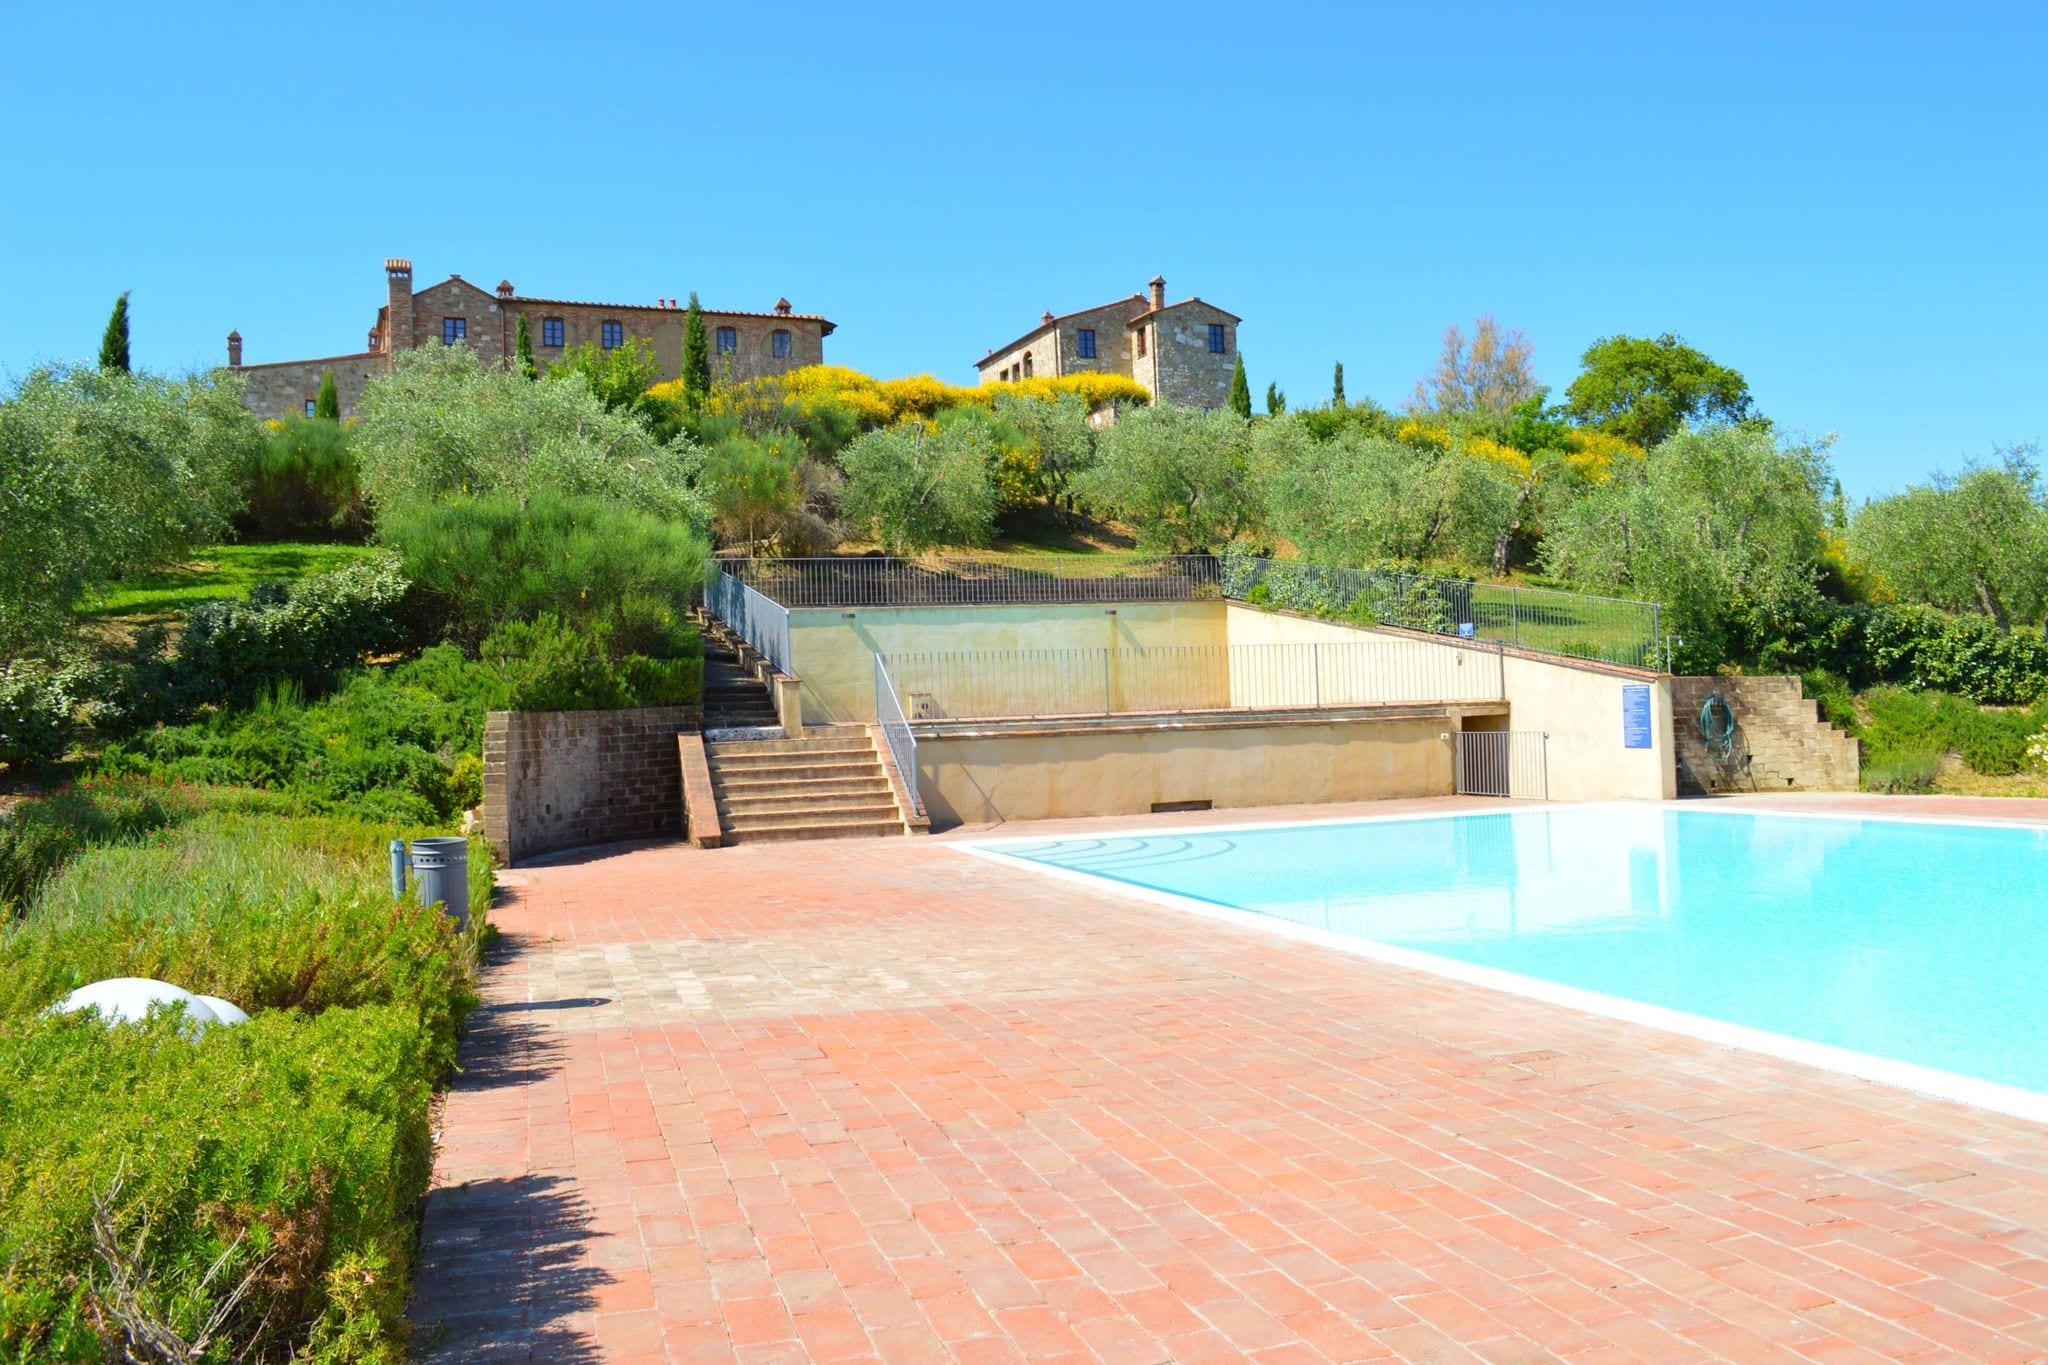 Ferienwohnung im Dorf Asciano mit 2 Pools in den Hügeln von Siena